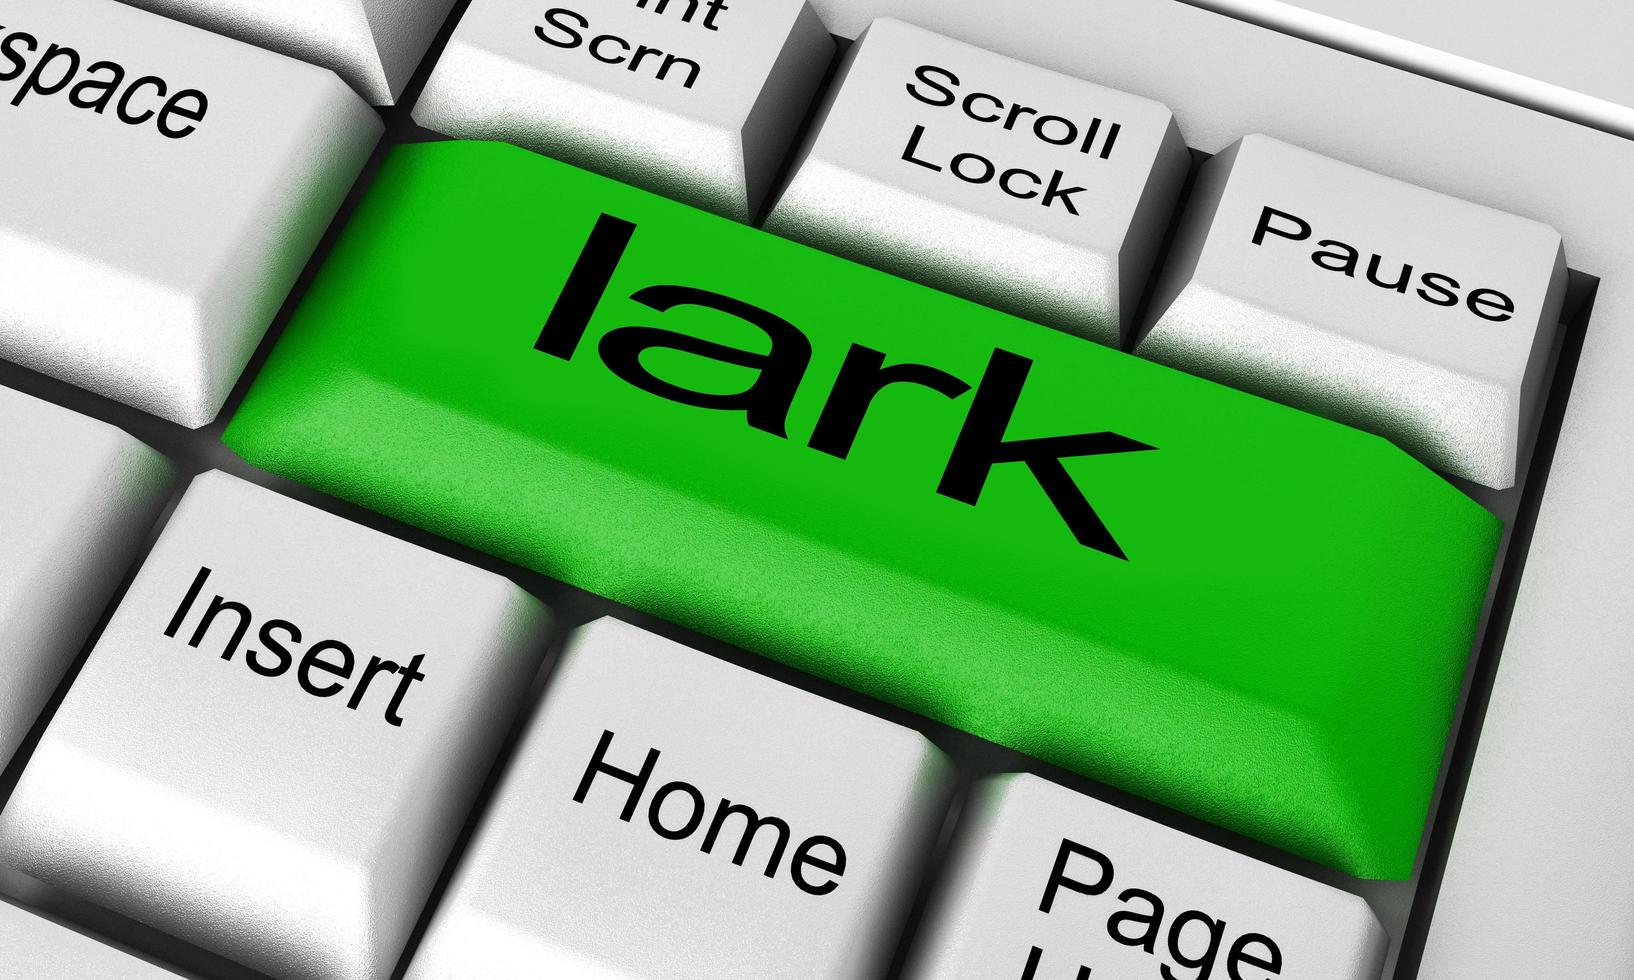 lark word on keyboard button photo